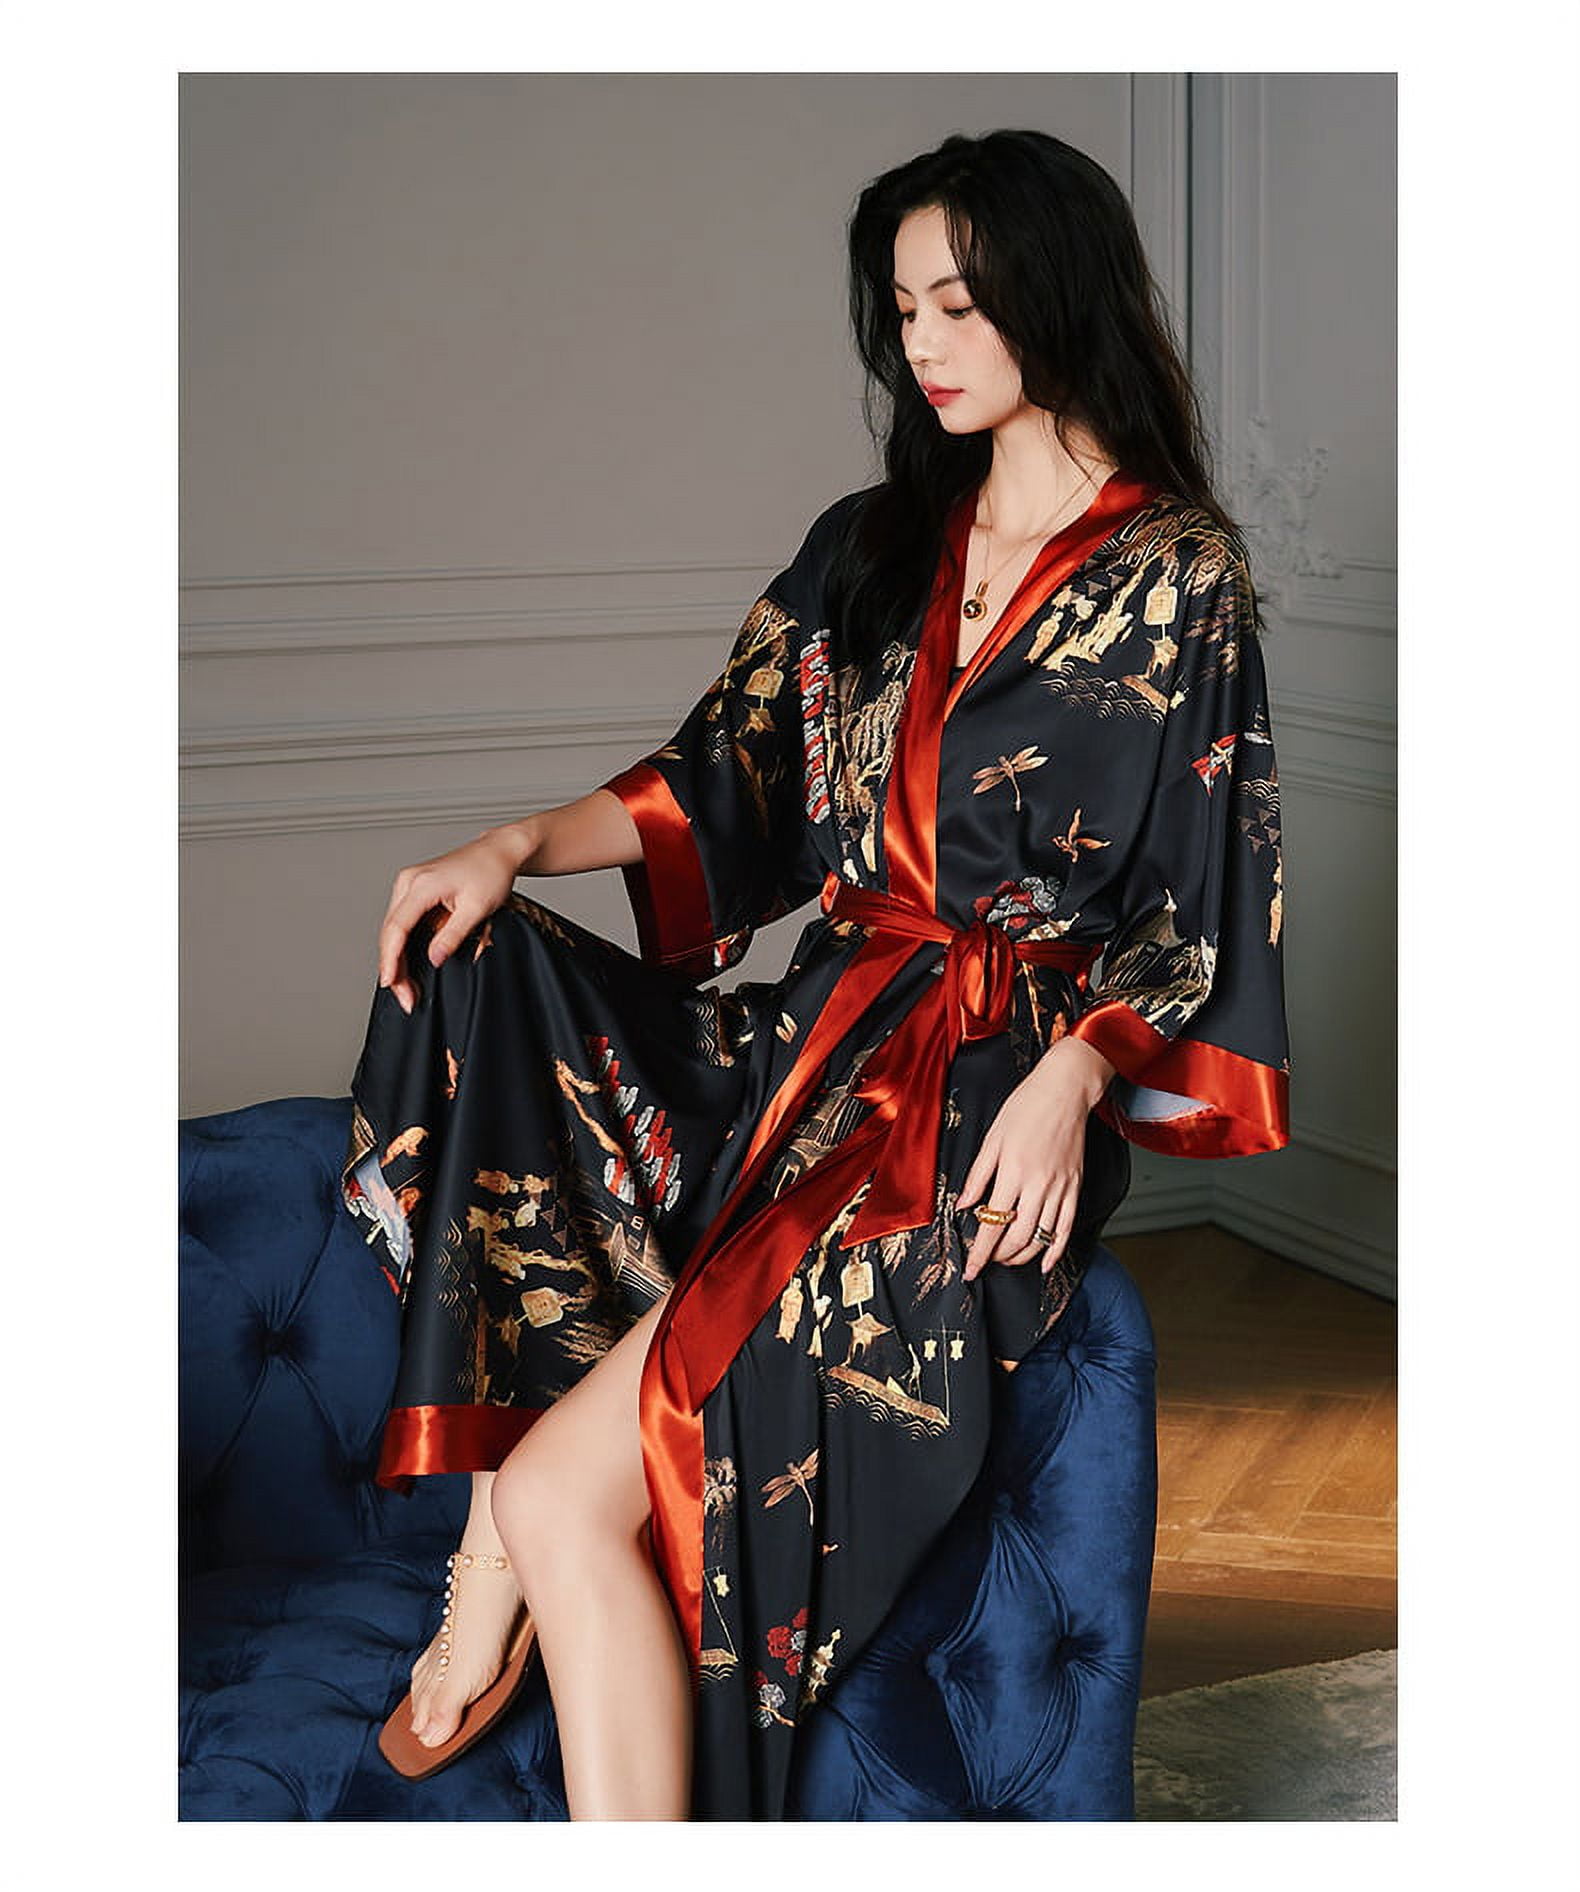 SHOOLIN Floral Pattern Kimono Robe Long Bathrobe For Women ||Women's Cotton Kimono  Robe Long - Floral || 3/4 Sleeve Kimono For Women's (Red Floral)